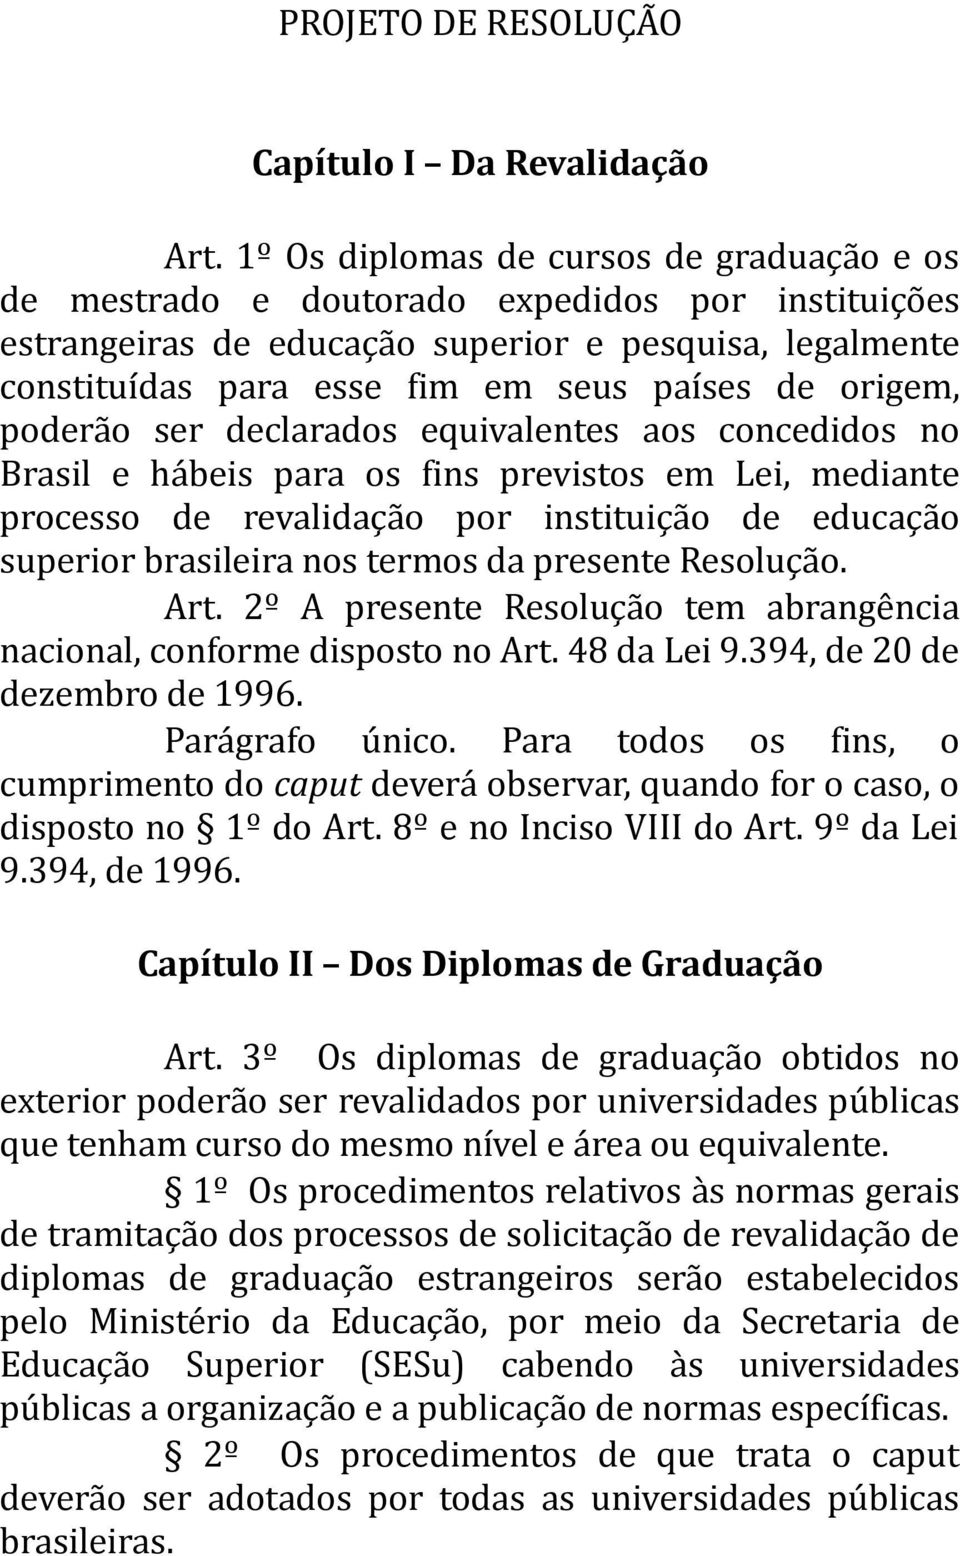 origem, poderão ser declarados equivalentes aos concedidos no Brasil e hábeis para os fins previstos em Lei, mediante processo de revalidação por instituição de educação superior brasileira nos